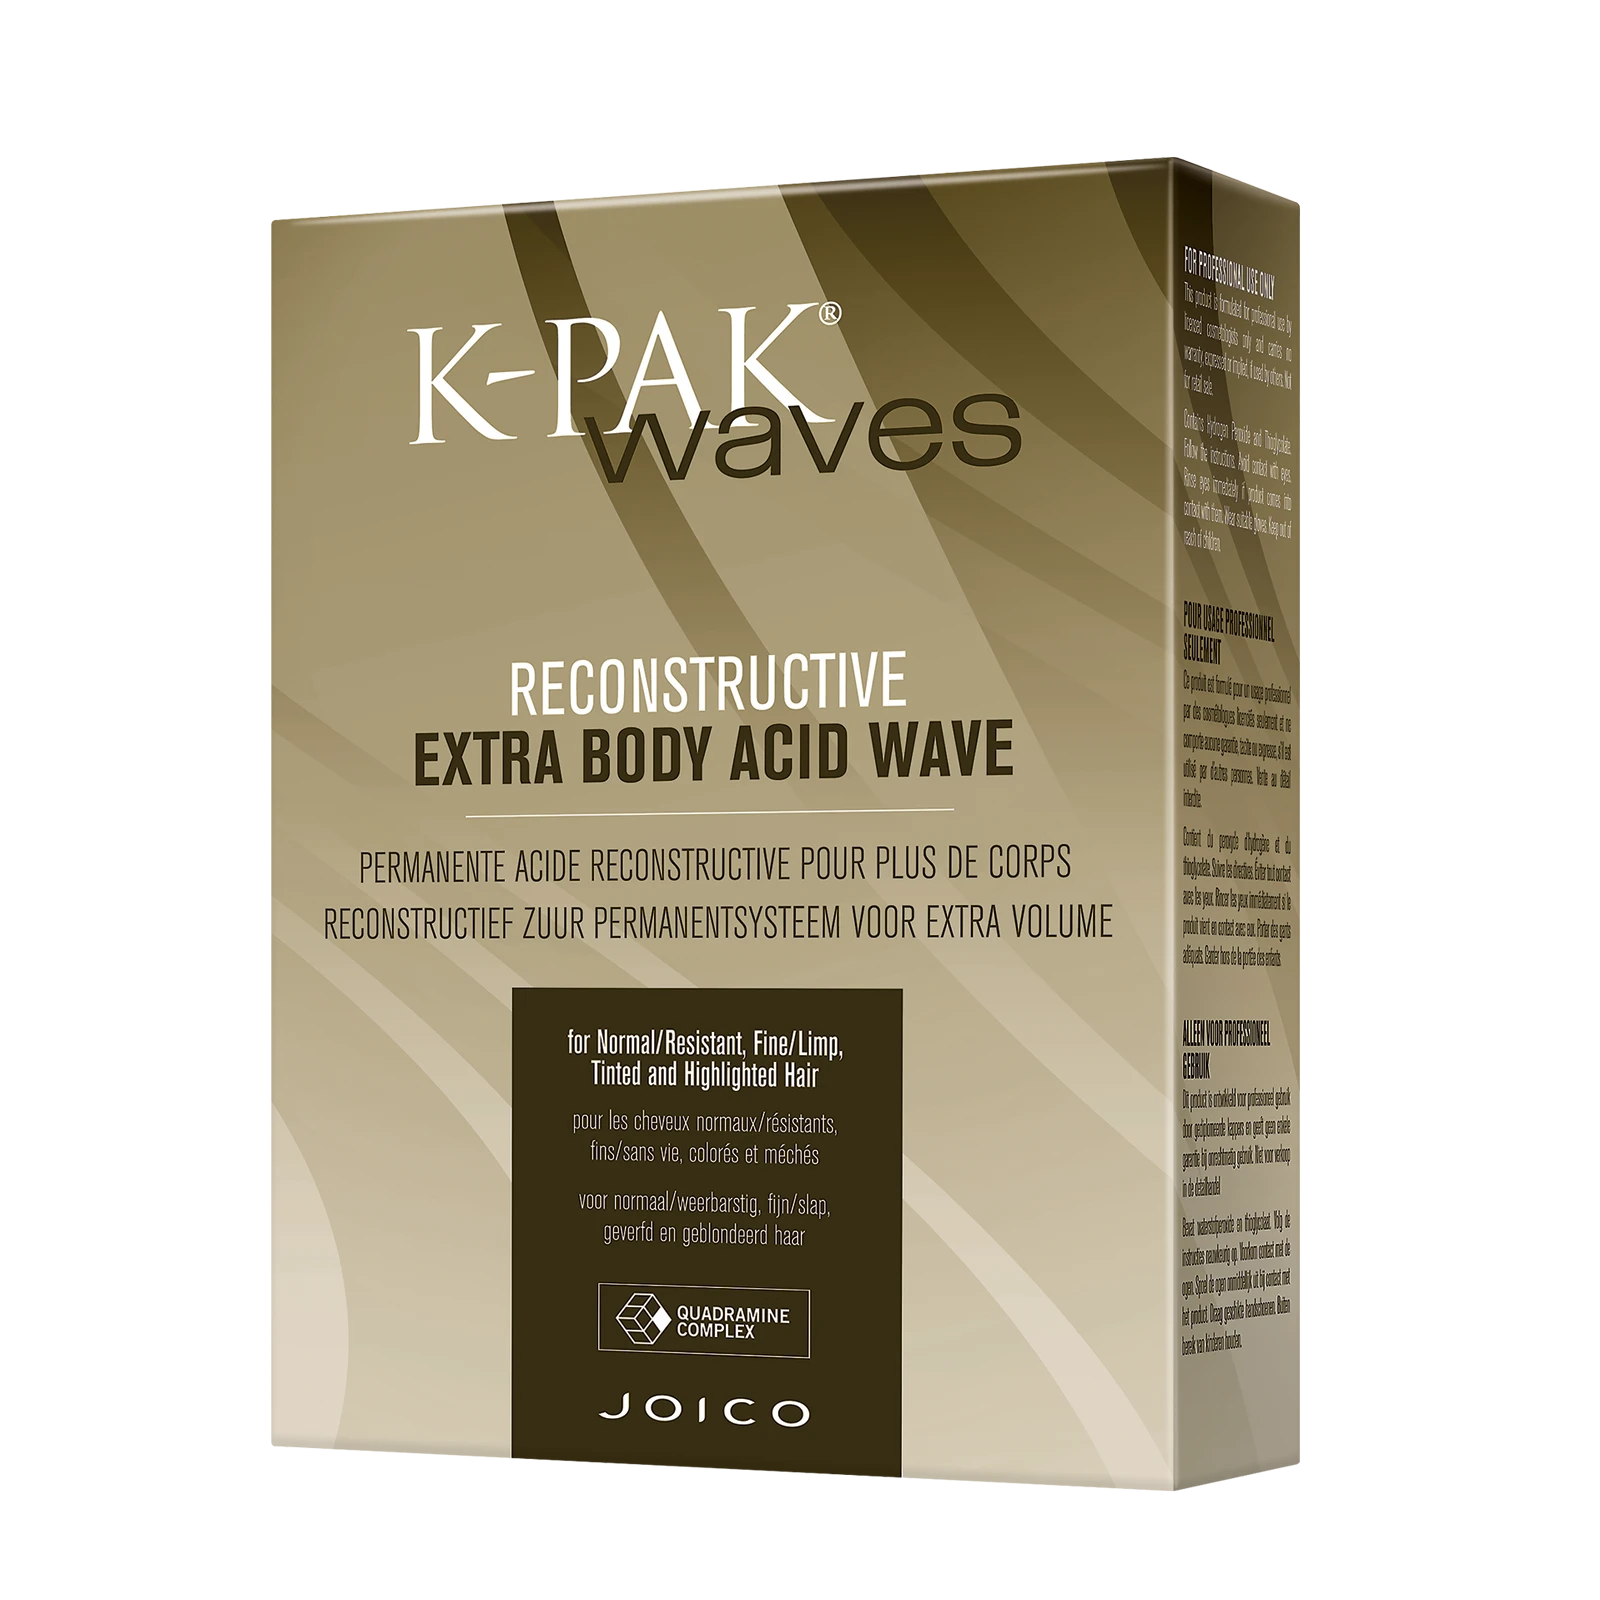 Joico K-pak Waves Extra Body Acid